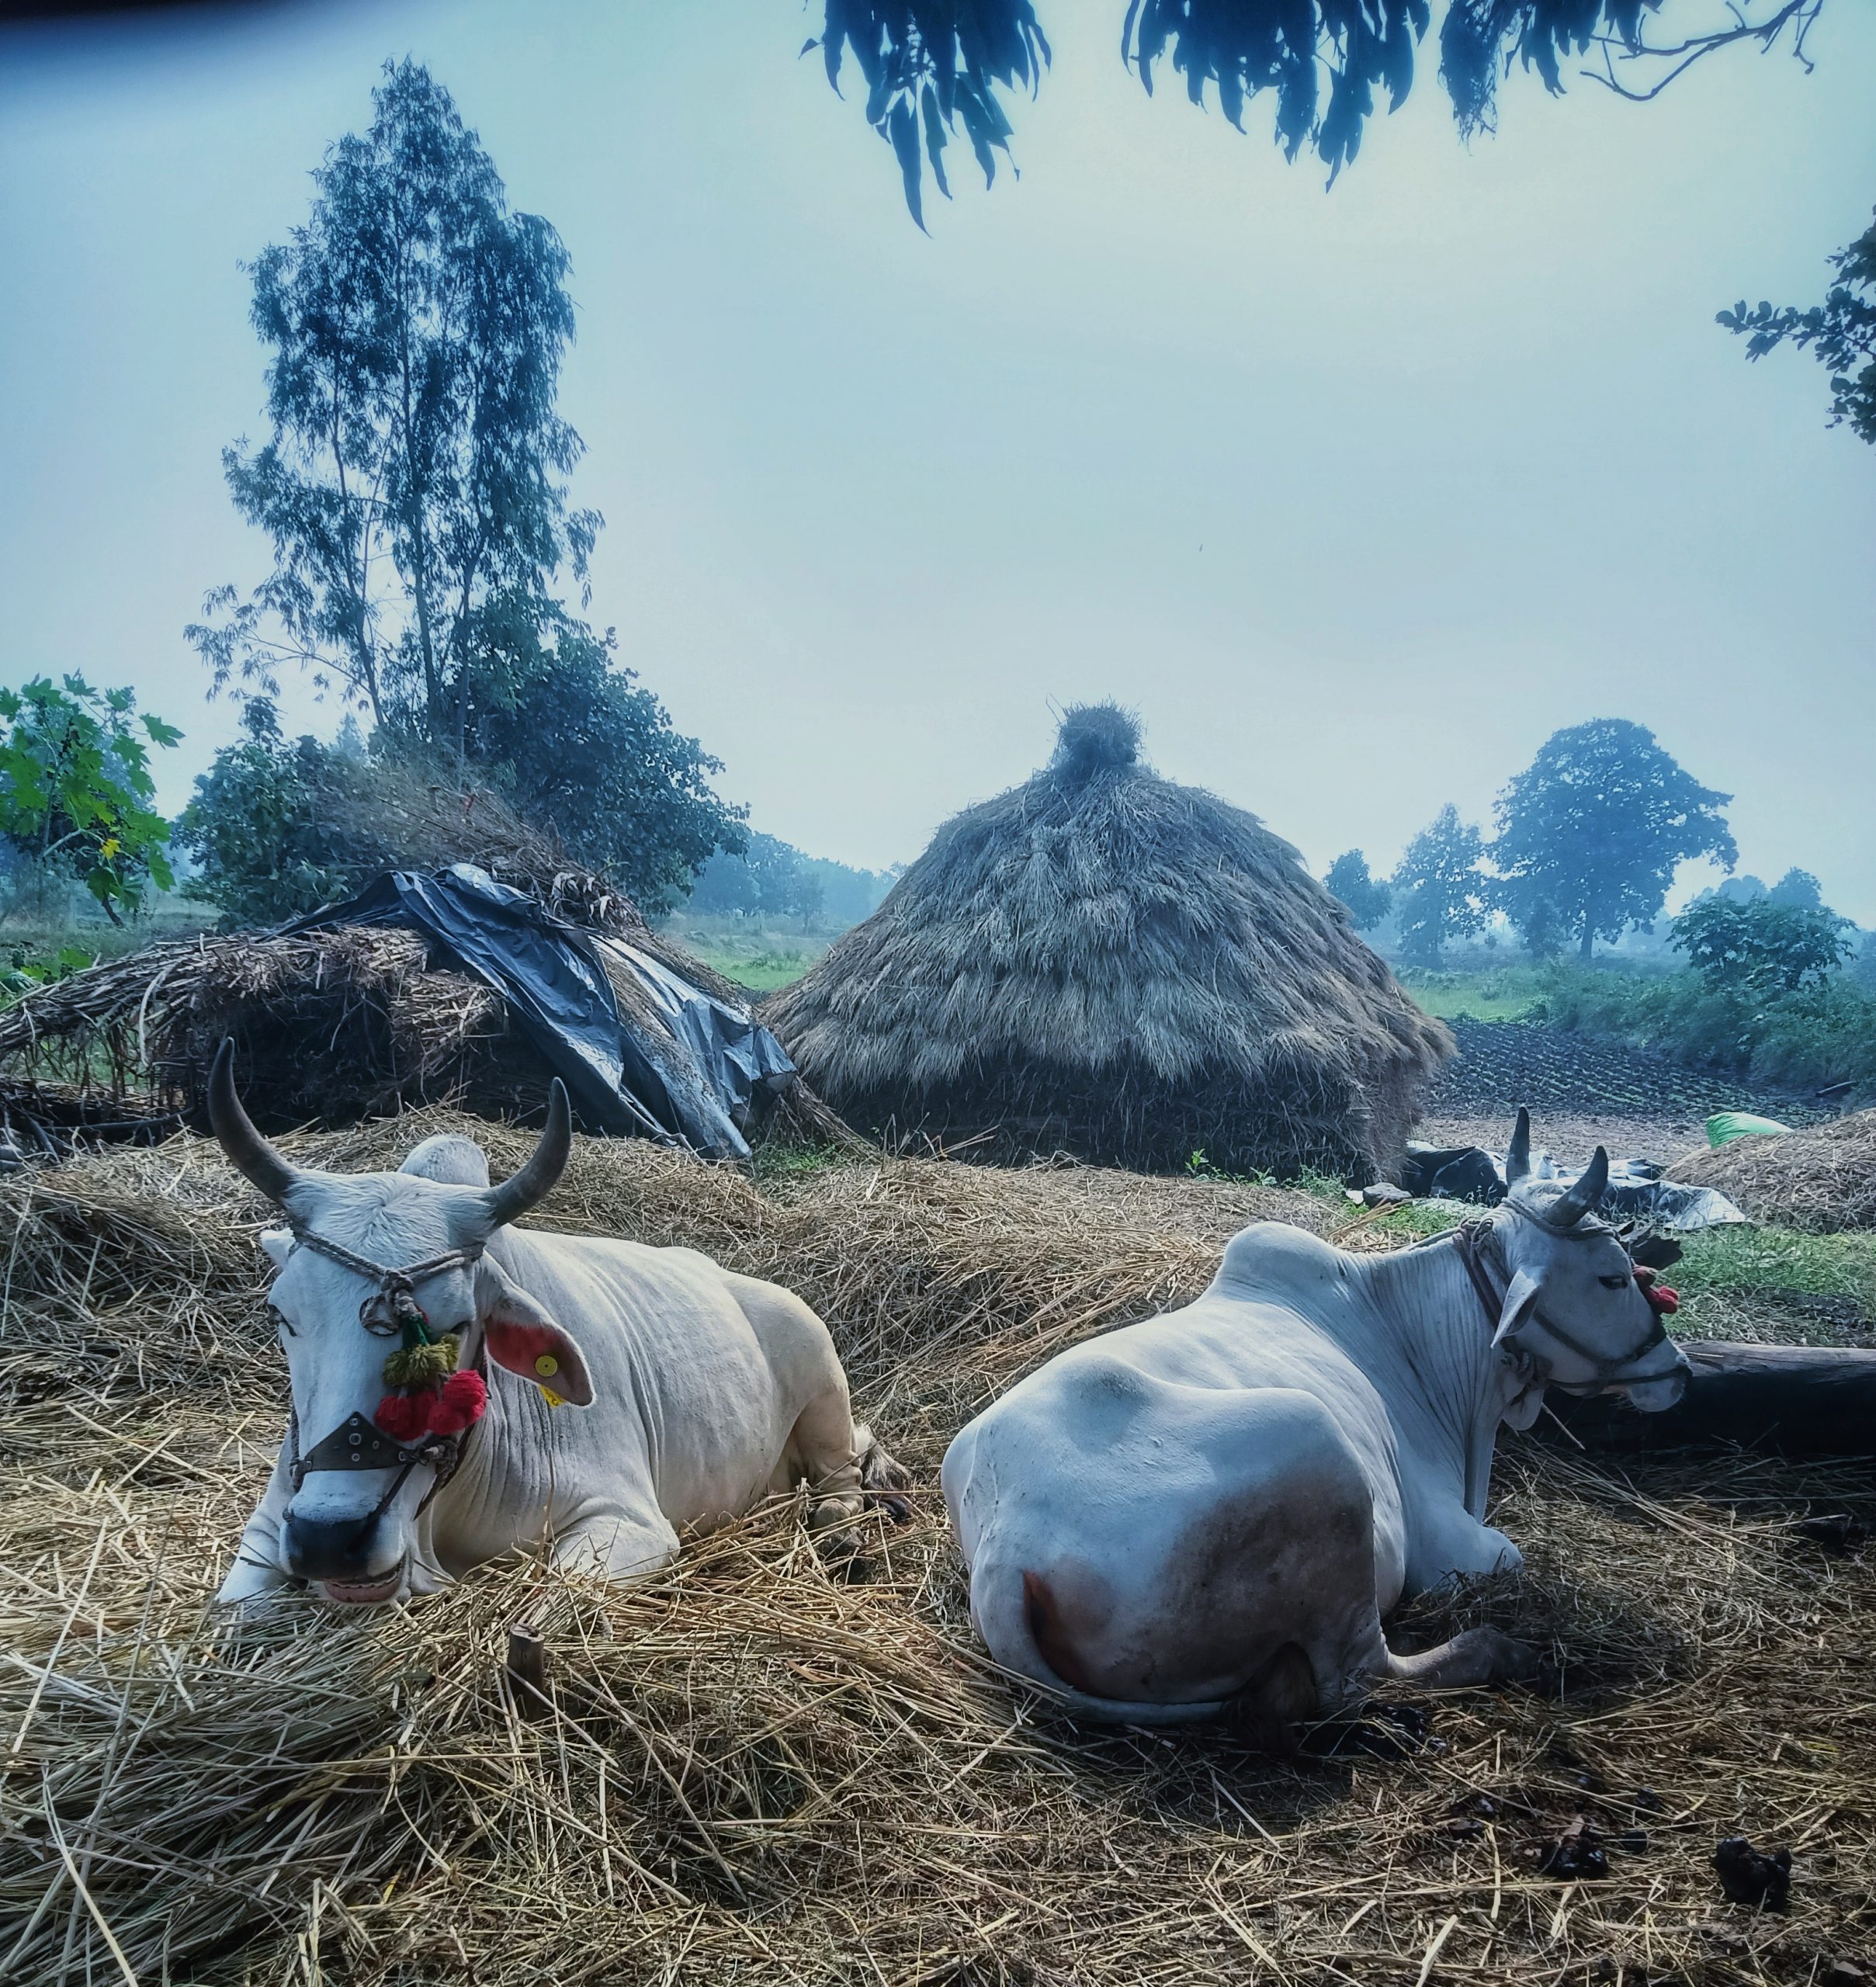 ox sitting on a hay